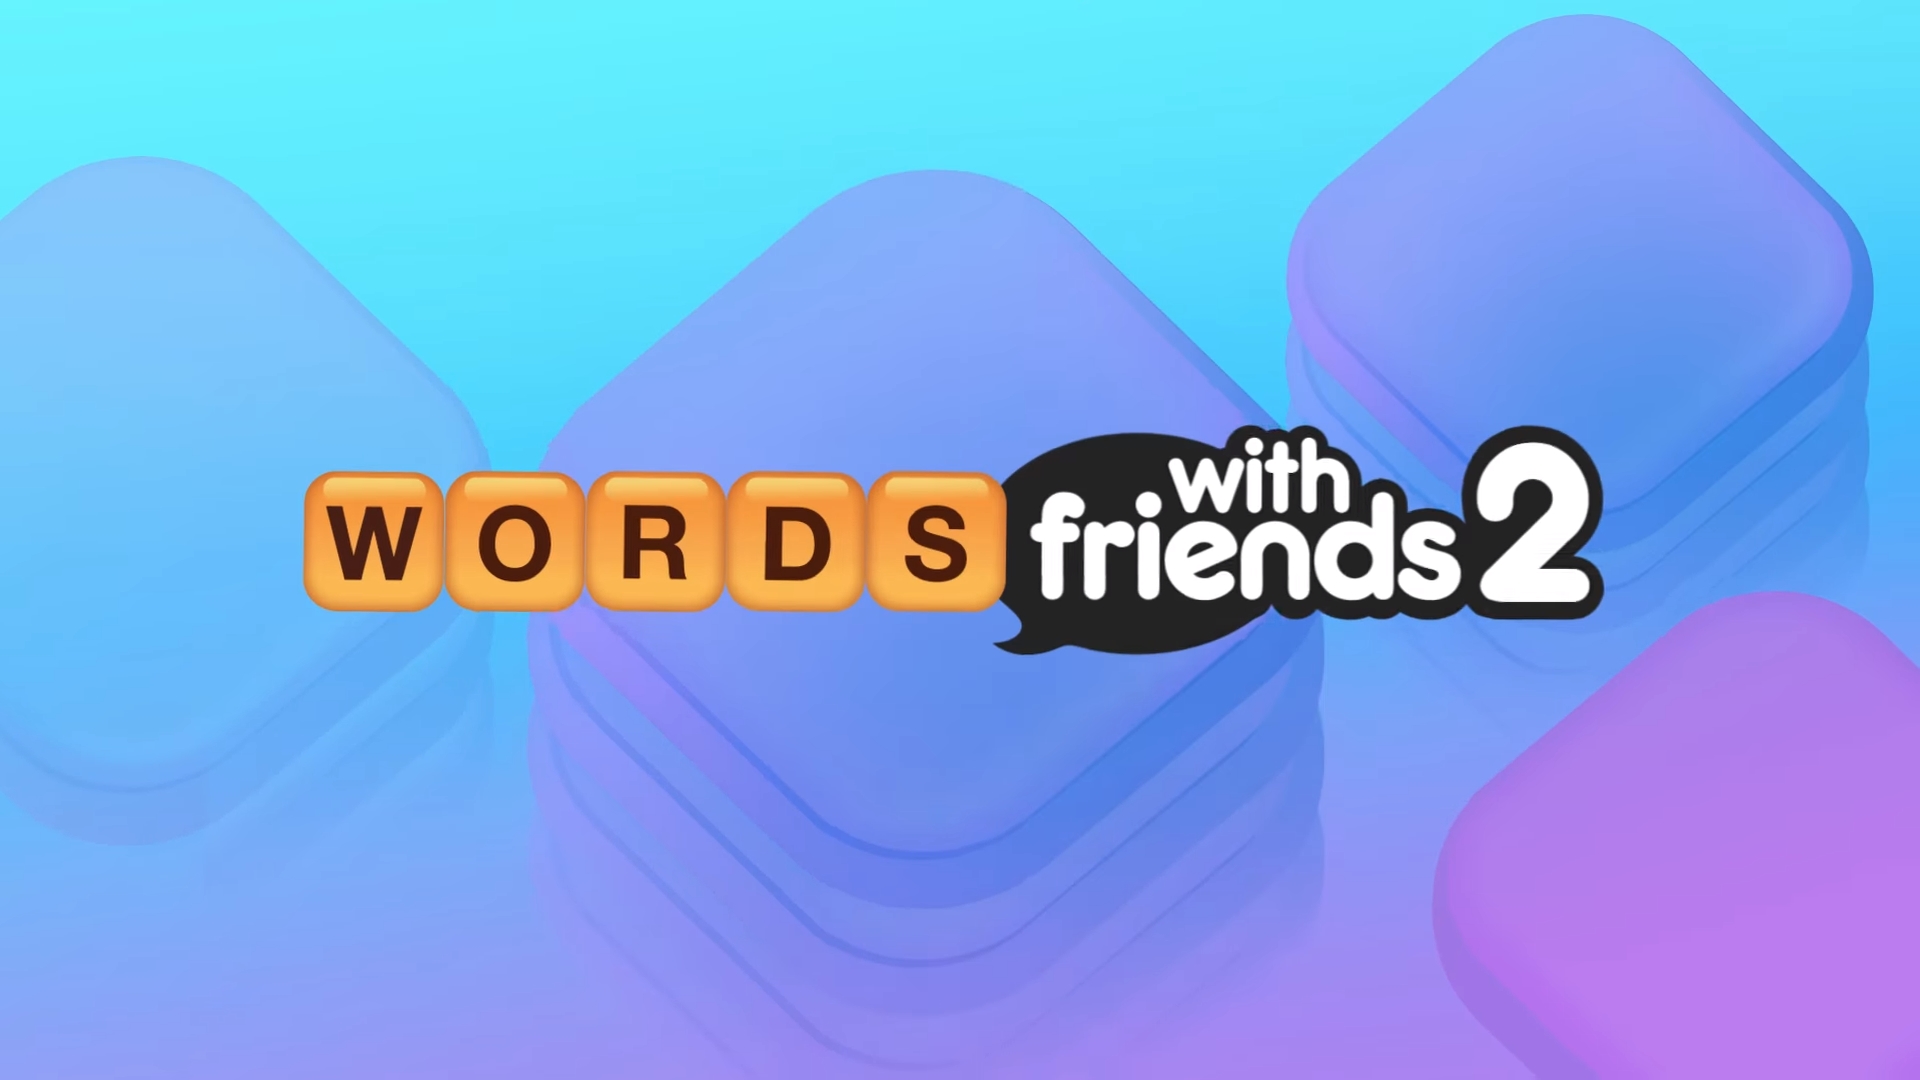 Words with friends. Words with friends 2. Words with friends 2 Word game. Friends 2 казино. Френд 2